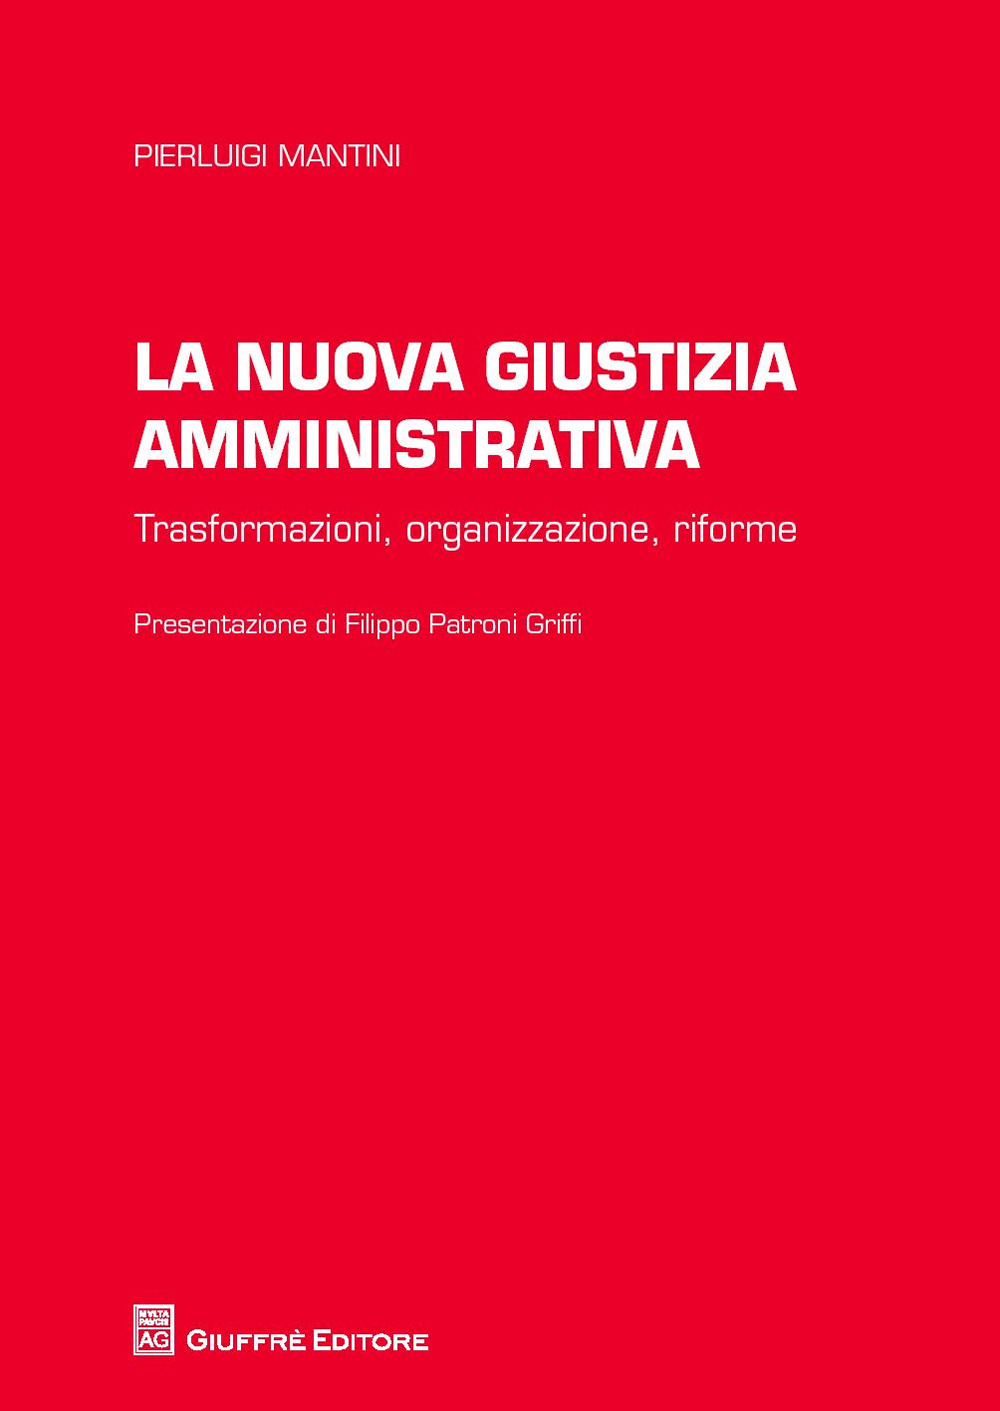 La nuova giustizia amministrativa. Trasformazioni, organizzazione, conflitti, riforme